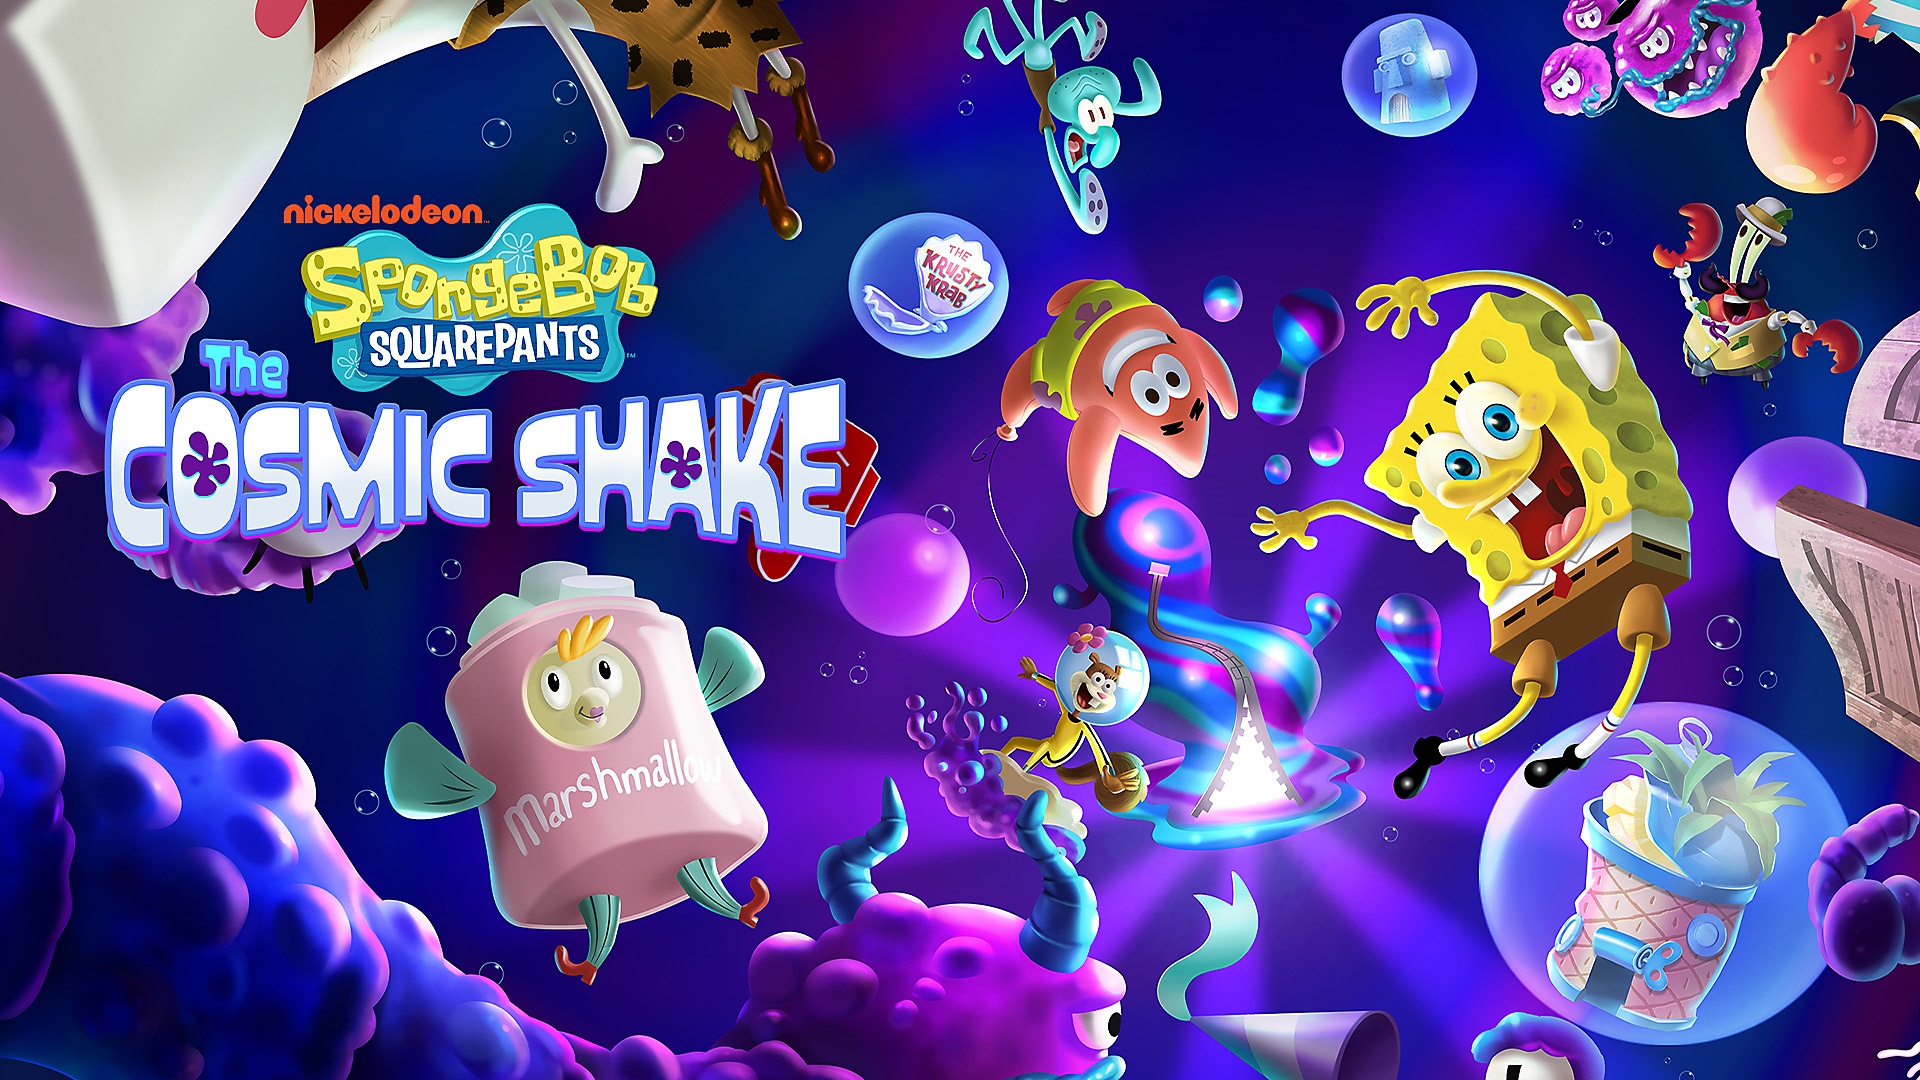 SpongeBob, Patrick a další postavy se vznášejí v podmořském vesmíru hry SpongeBob SquarePants: The Cosmic Shake na PS4, PS5